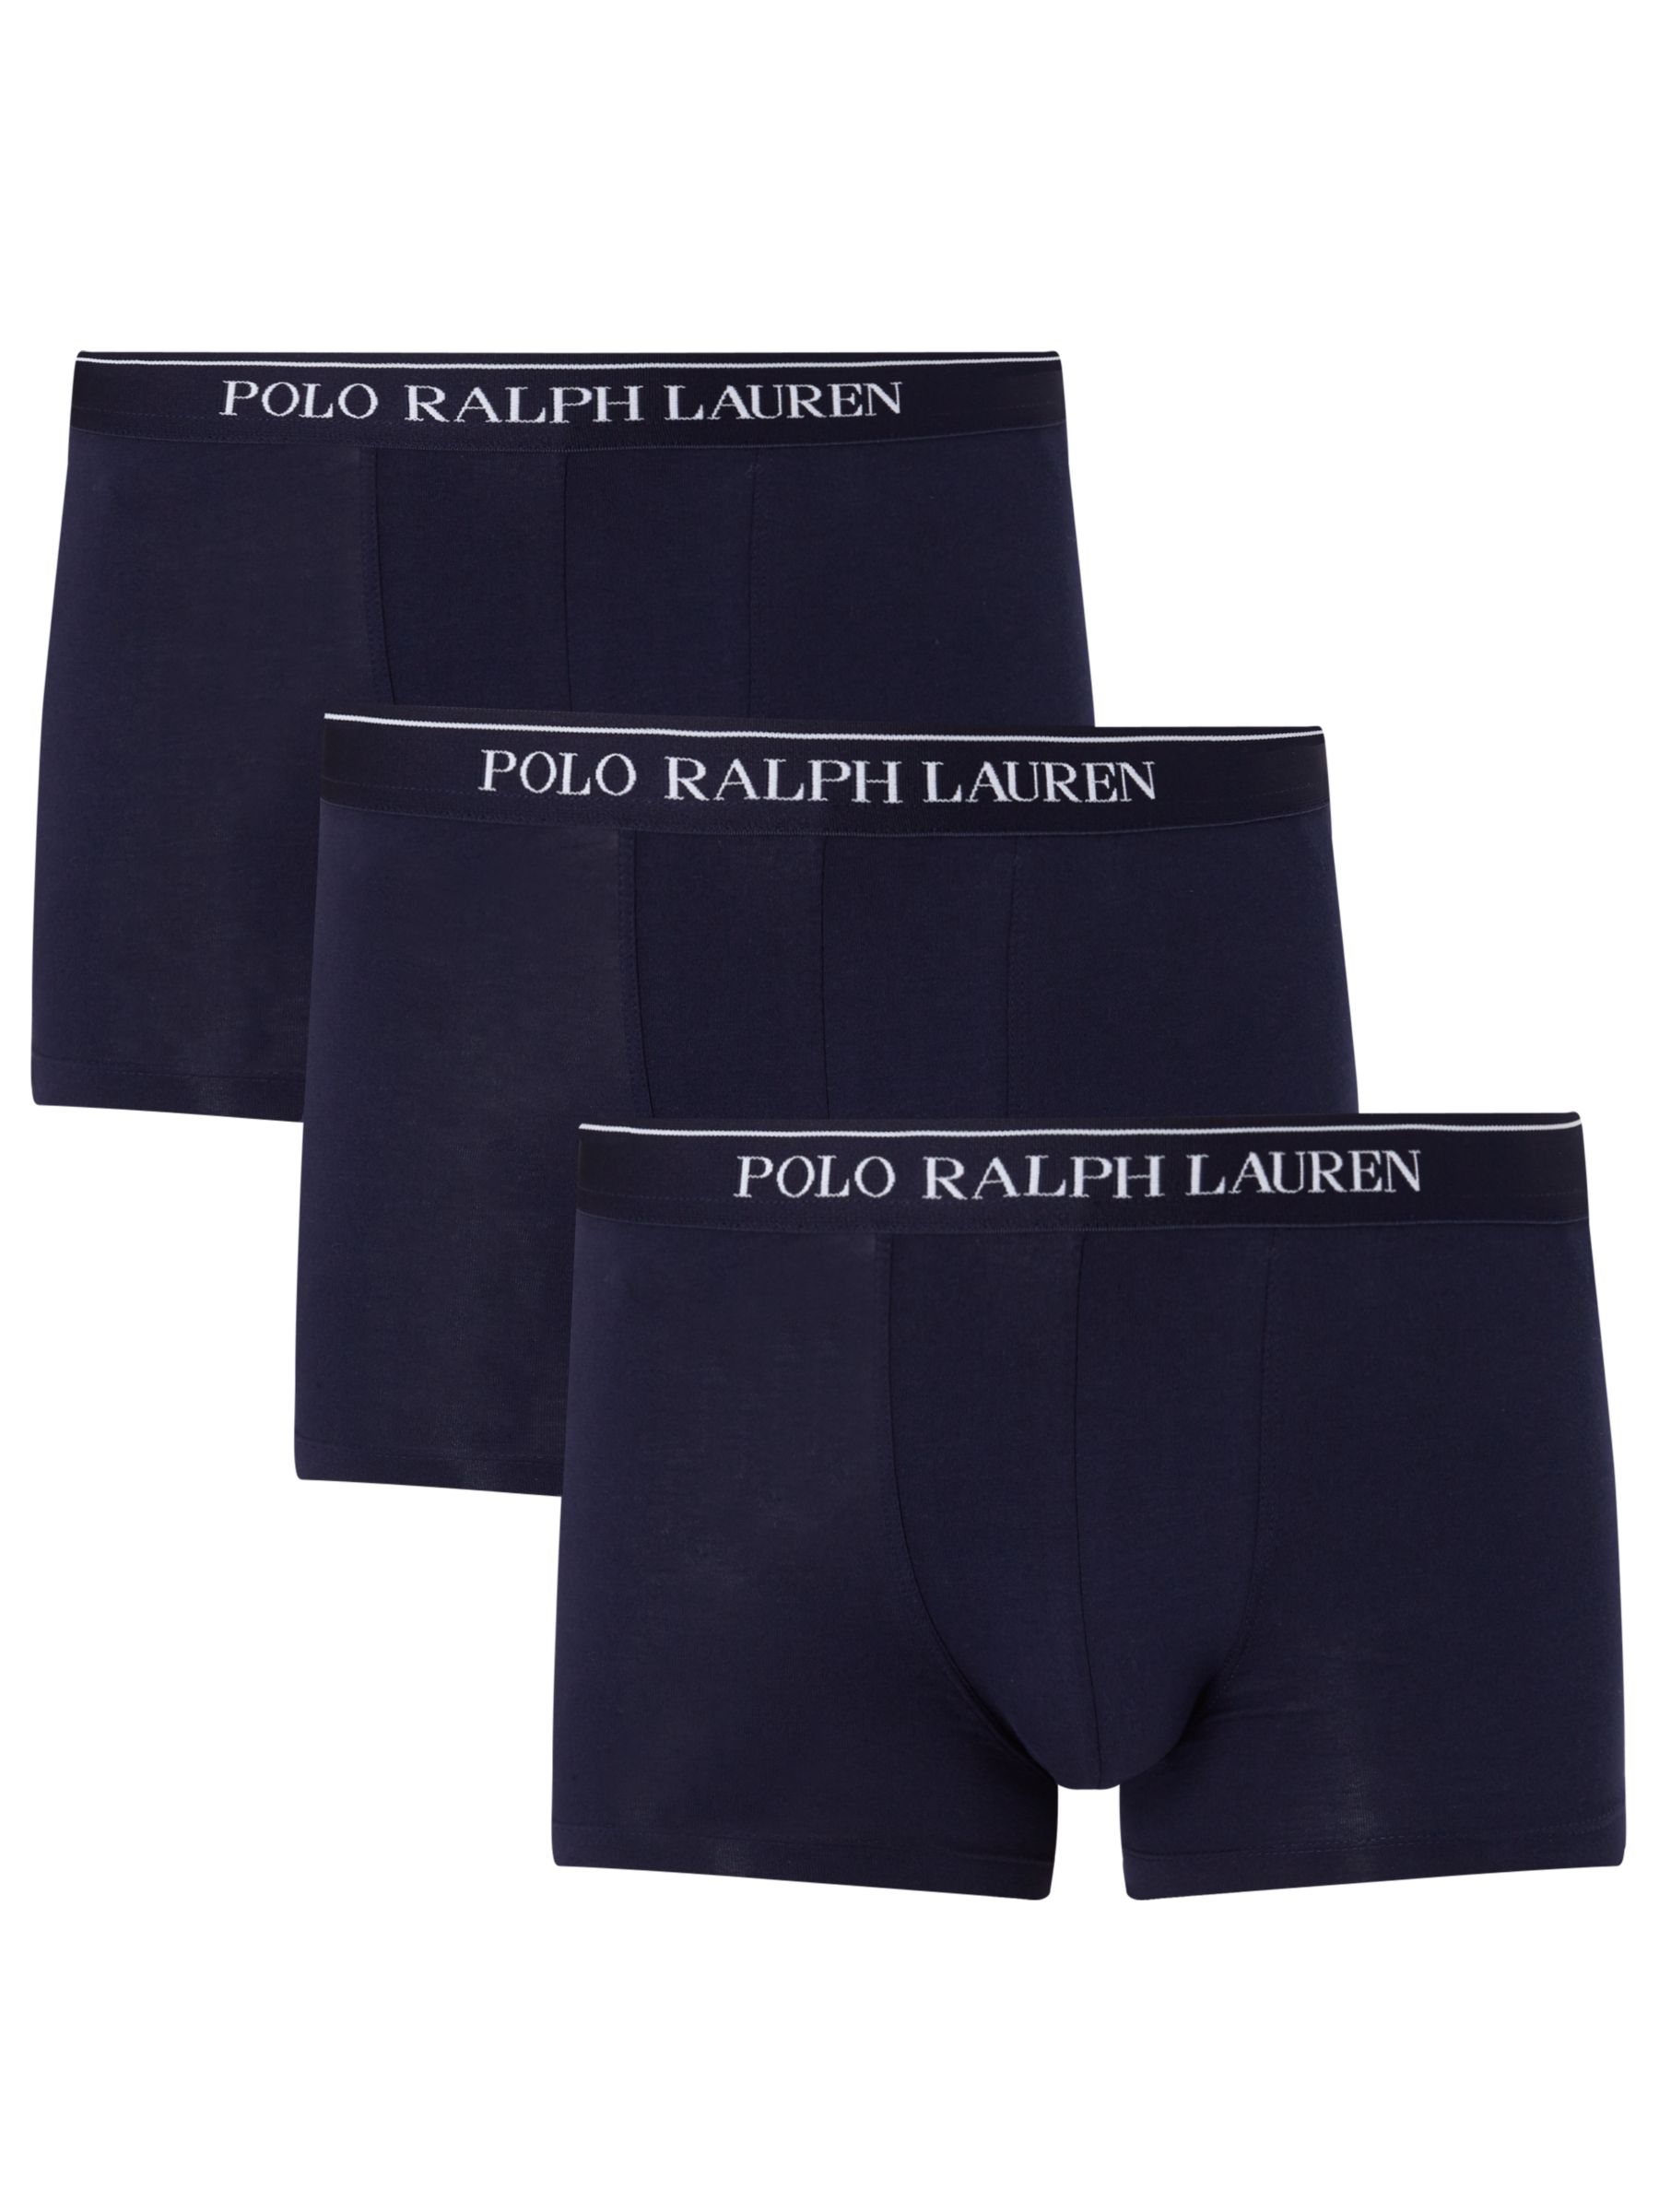 Ralph Lauren Polo Ralph Lauren Stretch Cotton Trunks, Pack of 3, Navy